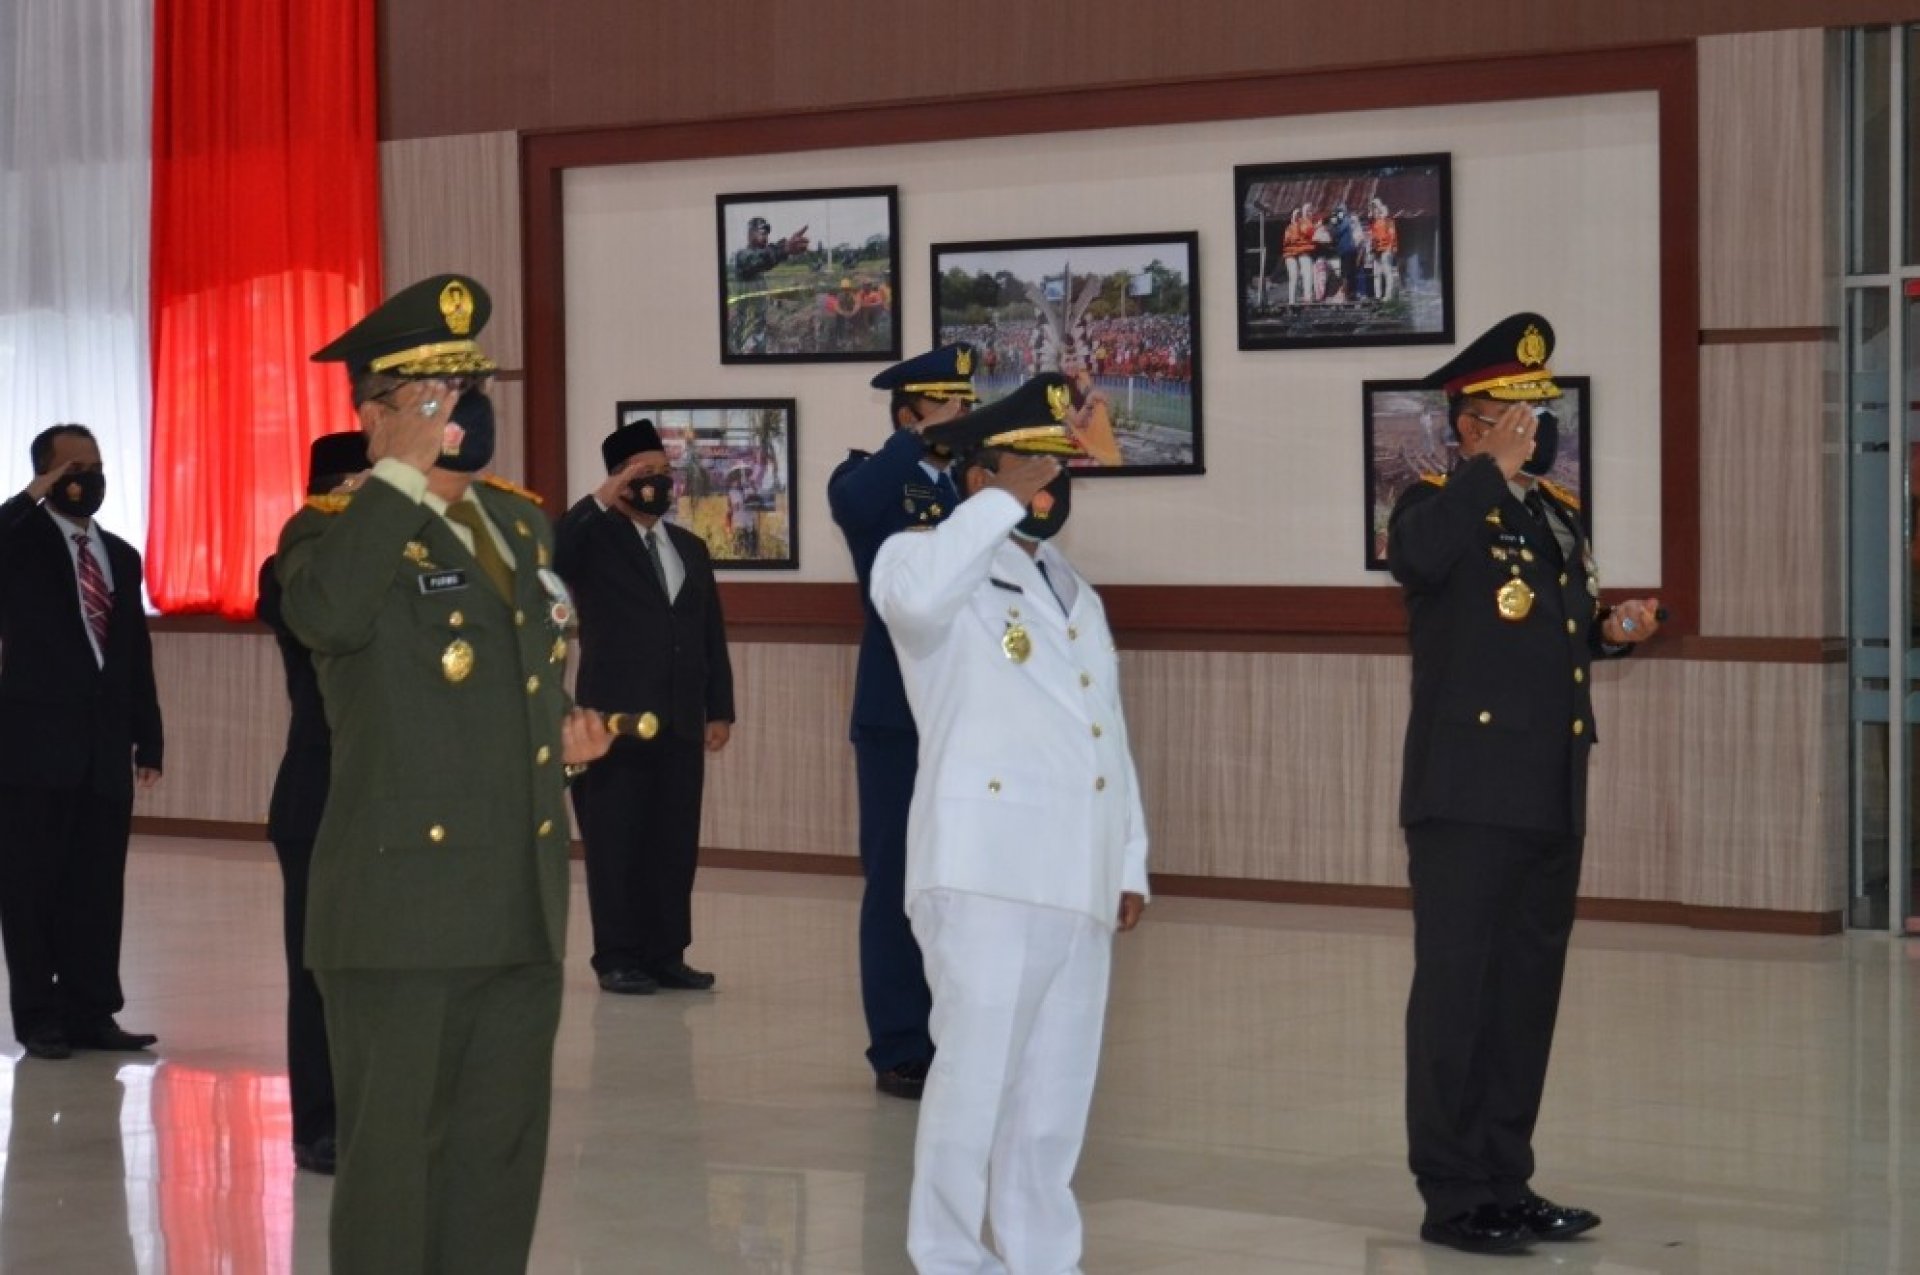 Plt. Gubernur Kalteng Ikuti Upacara HUT ke-75 TNI Secara Virtual